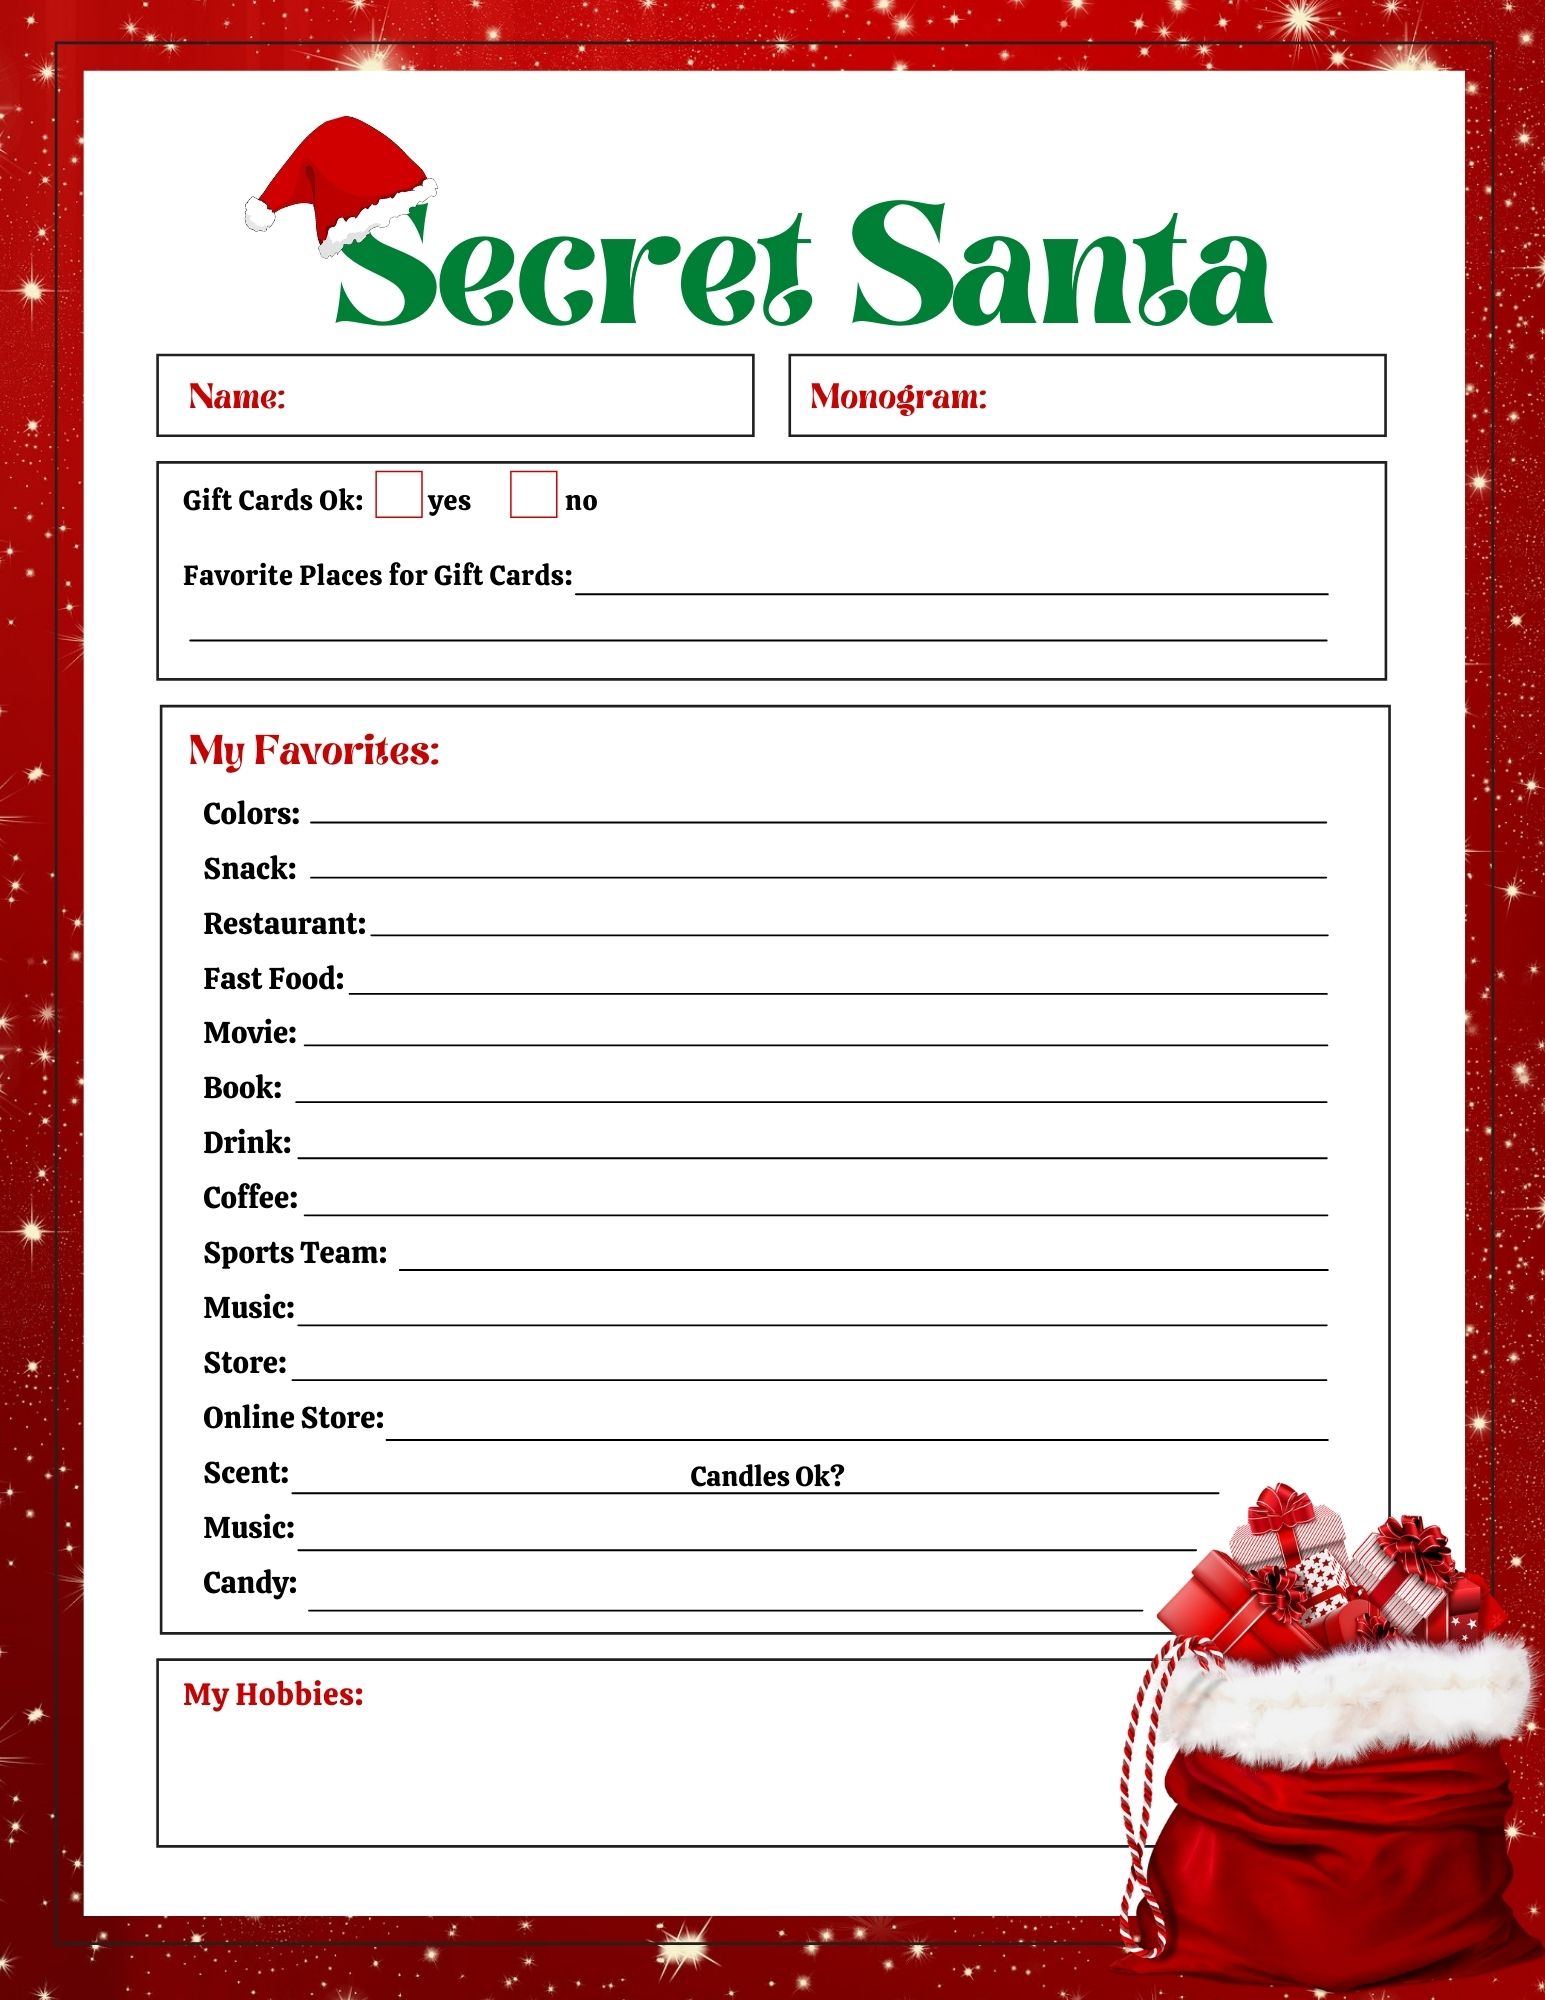 FREE Secret Santa List Printable Questionnaire: 2 Options Leap of